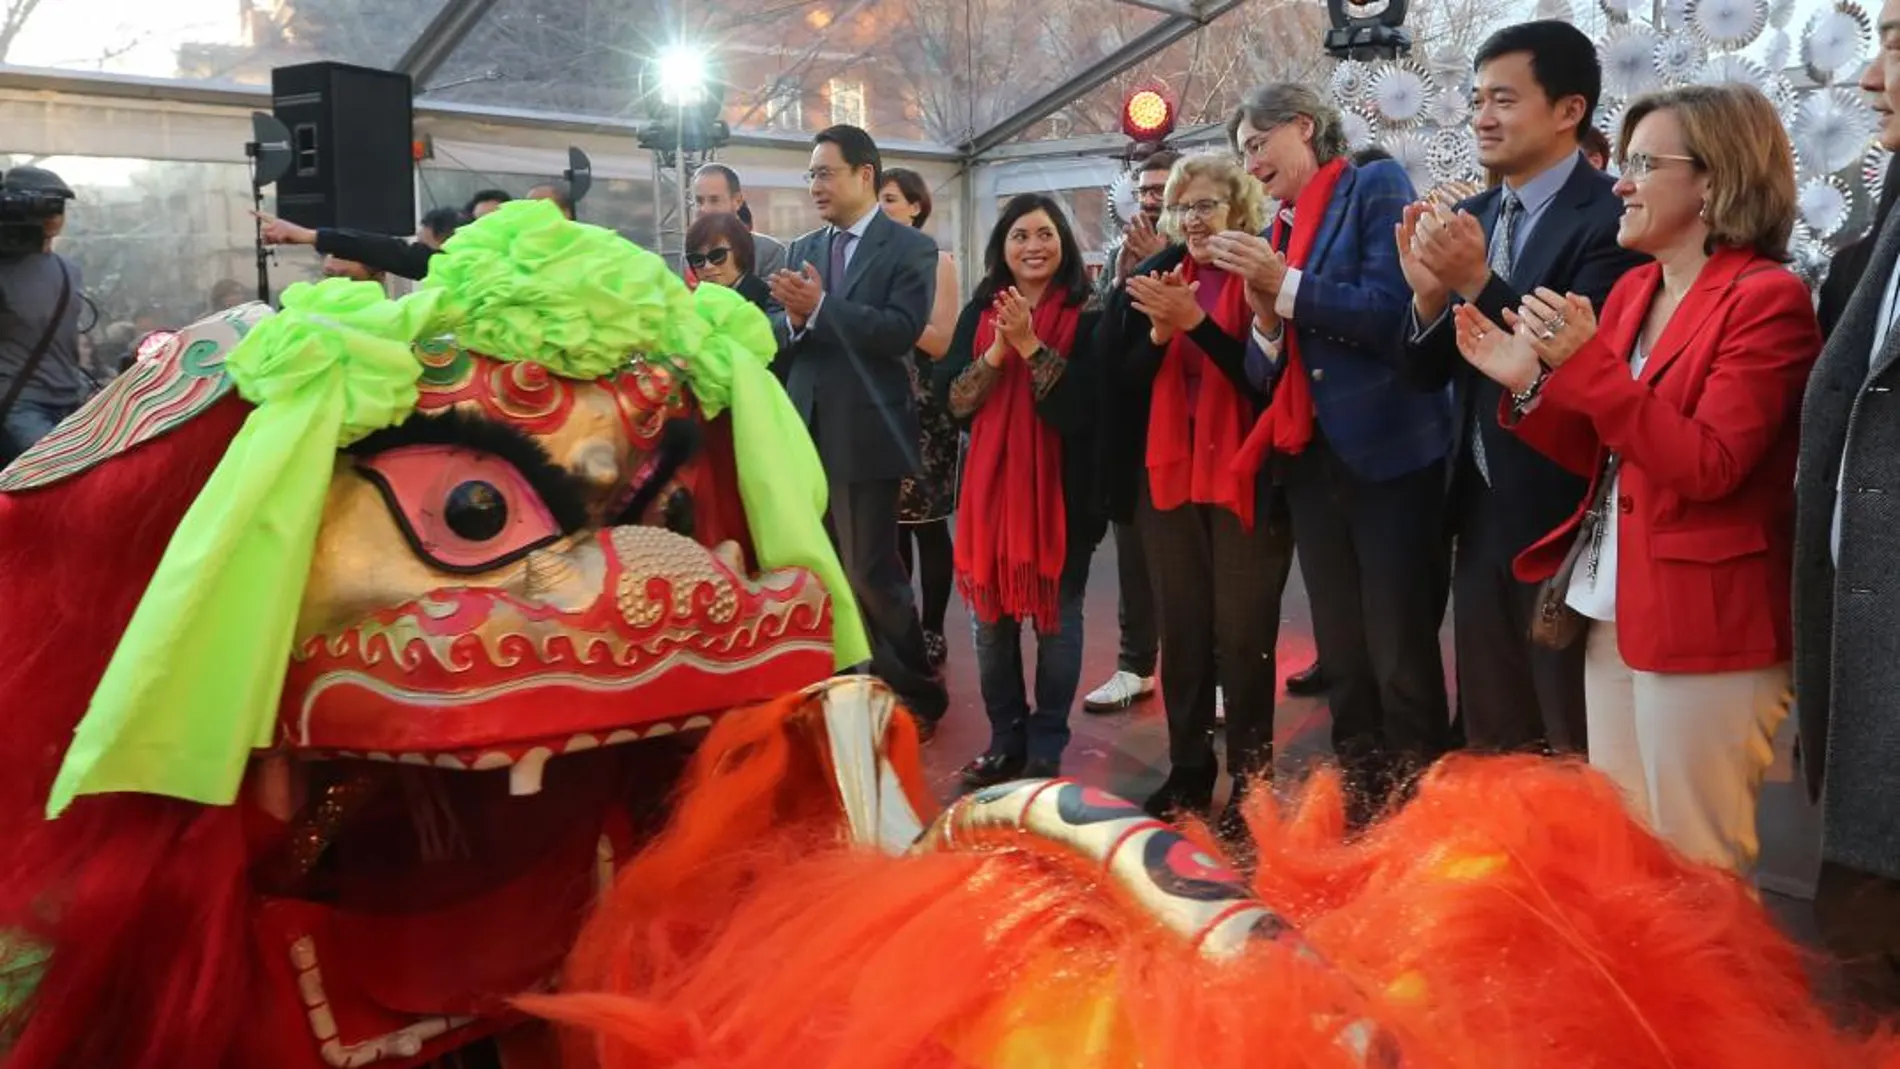 Celebraciones del año nuevo chino en Madrid con presencia de la alcalsea, Manuela Carmena. Rubén Mondelo